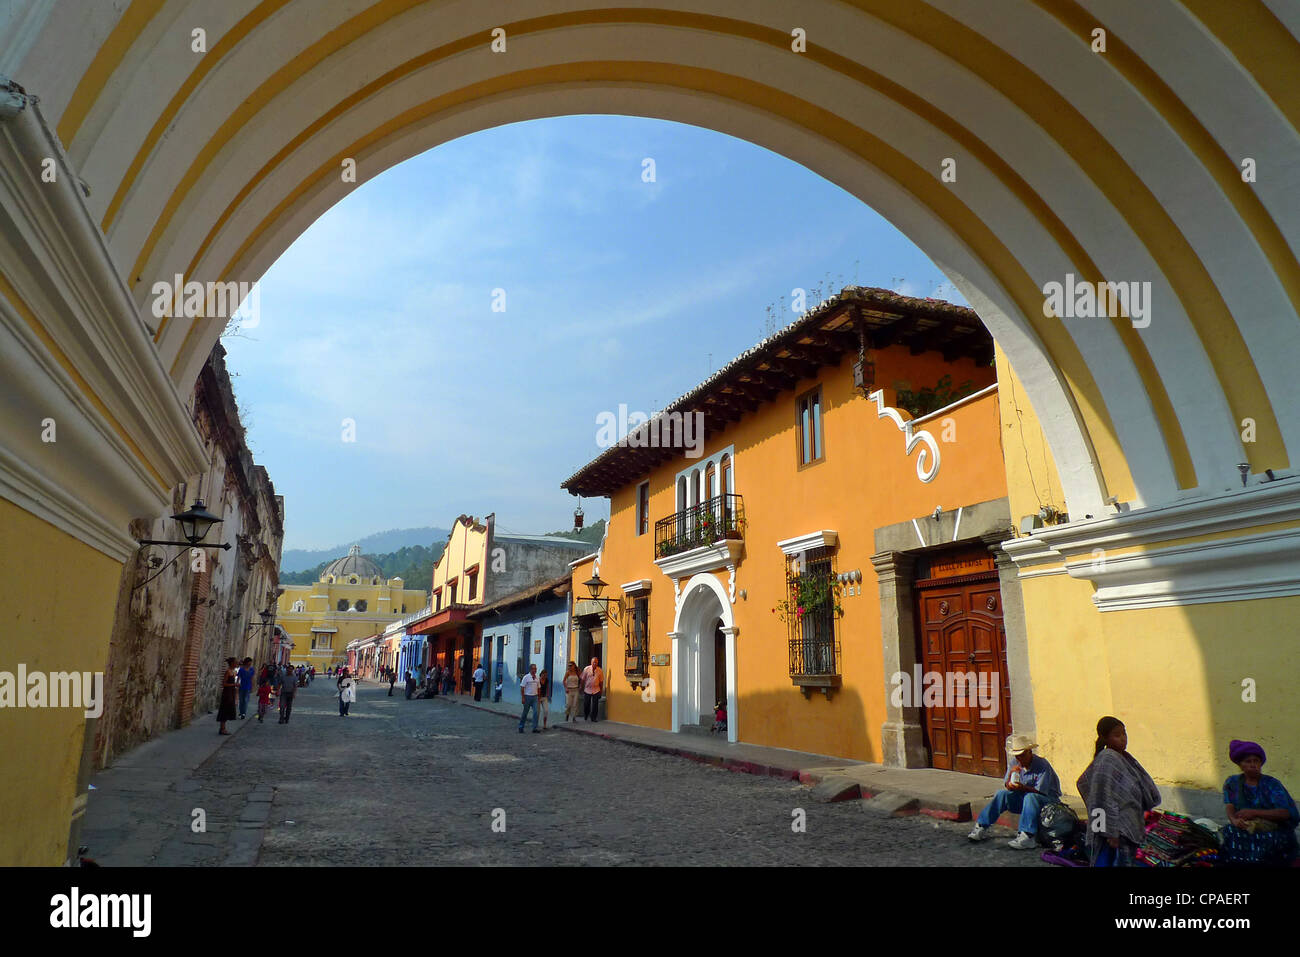 Guatemala Antigua bright colorful cobble stone street Arco de Santa Catalina La Antigua Unesco Site Stock Photo